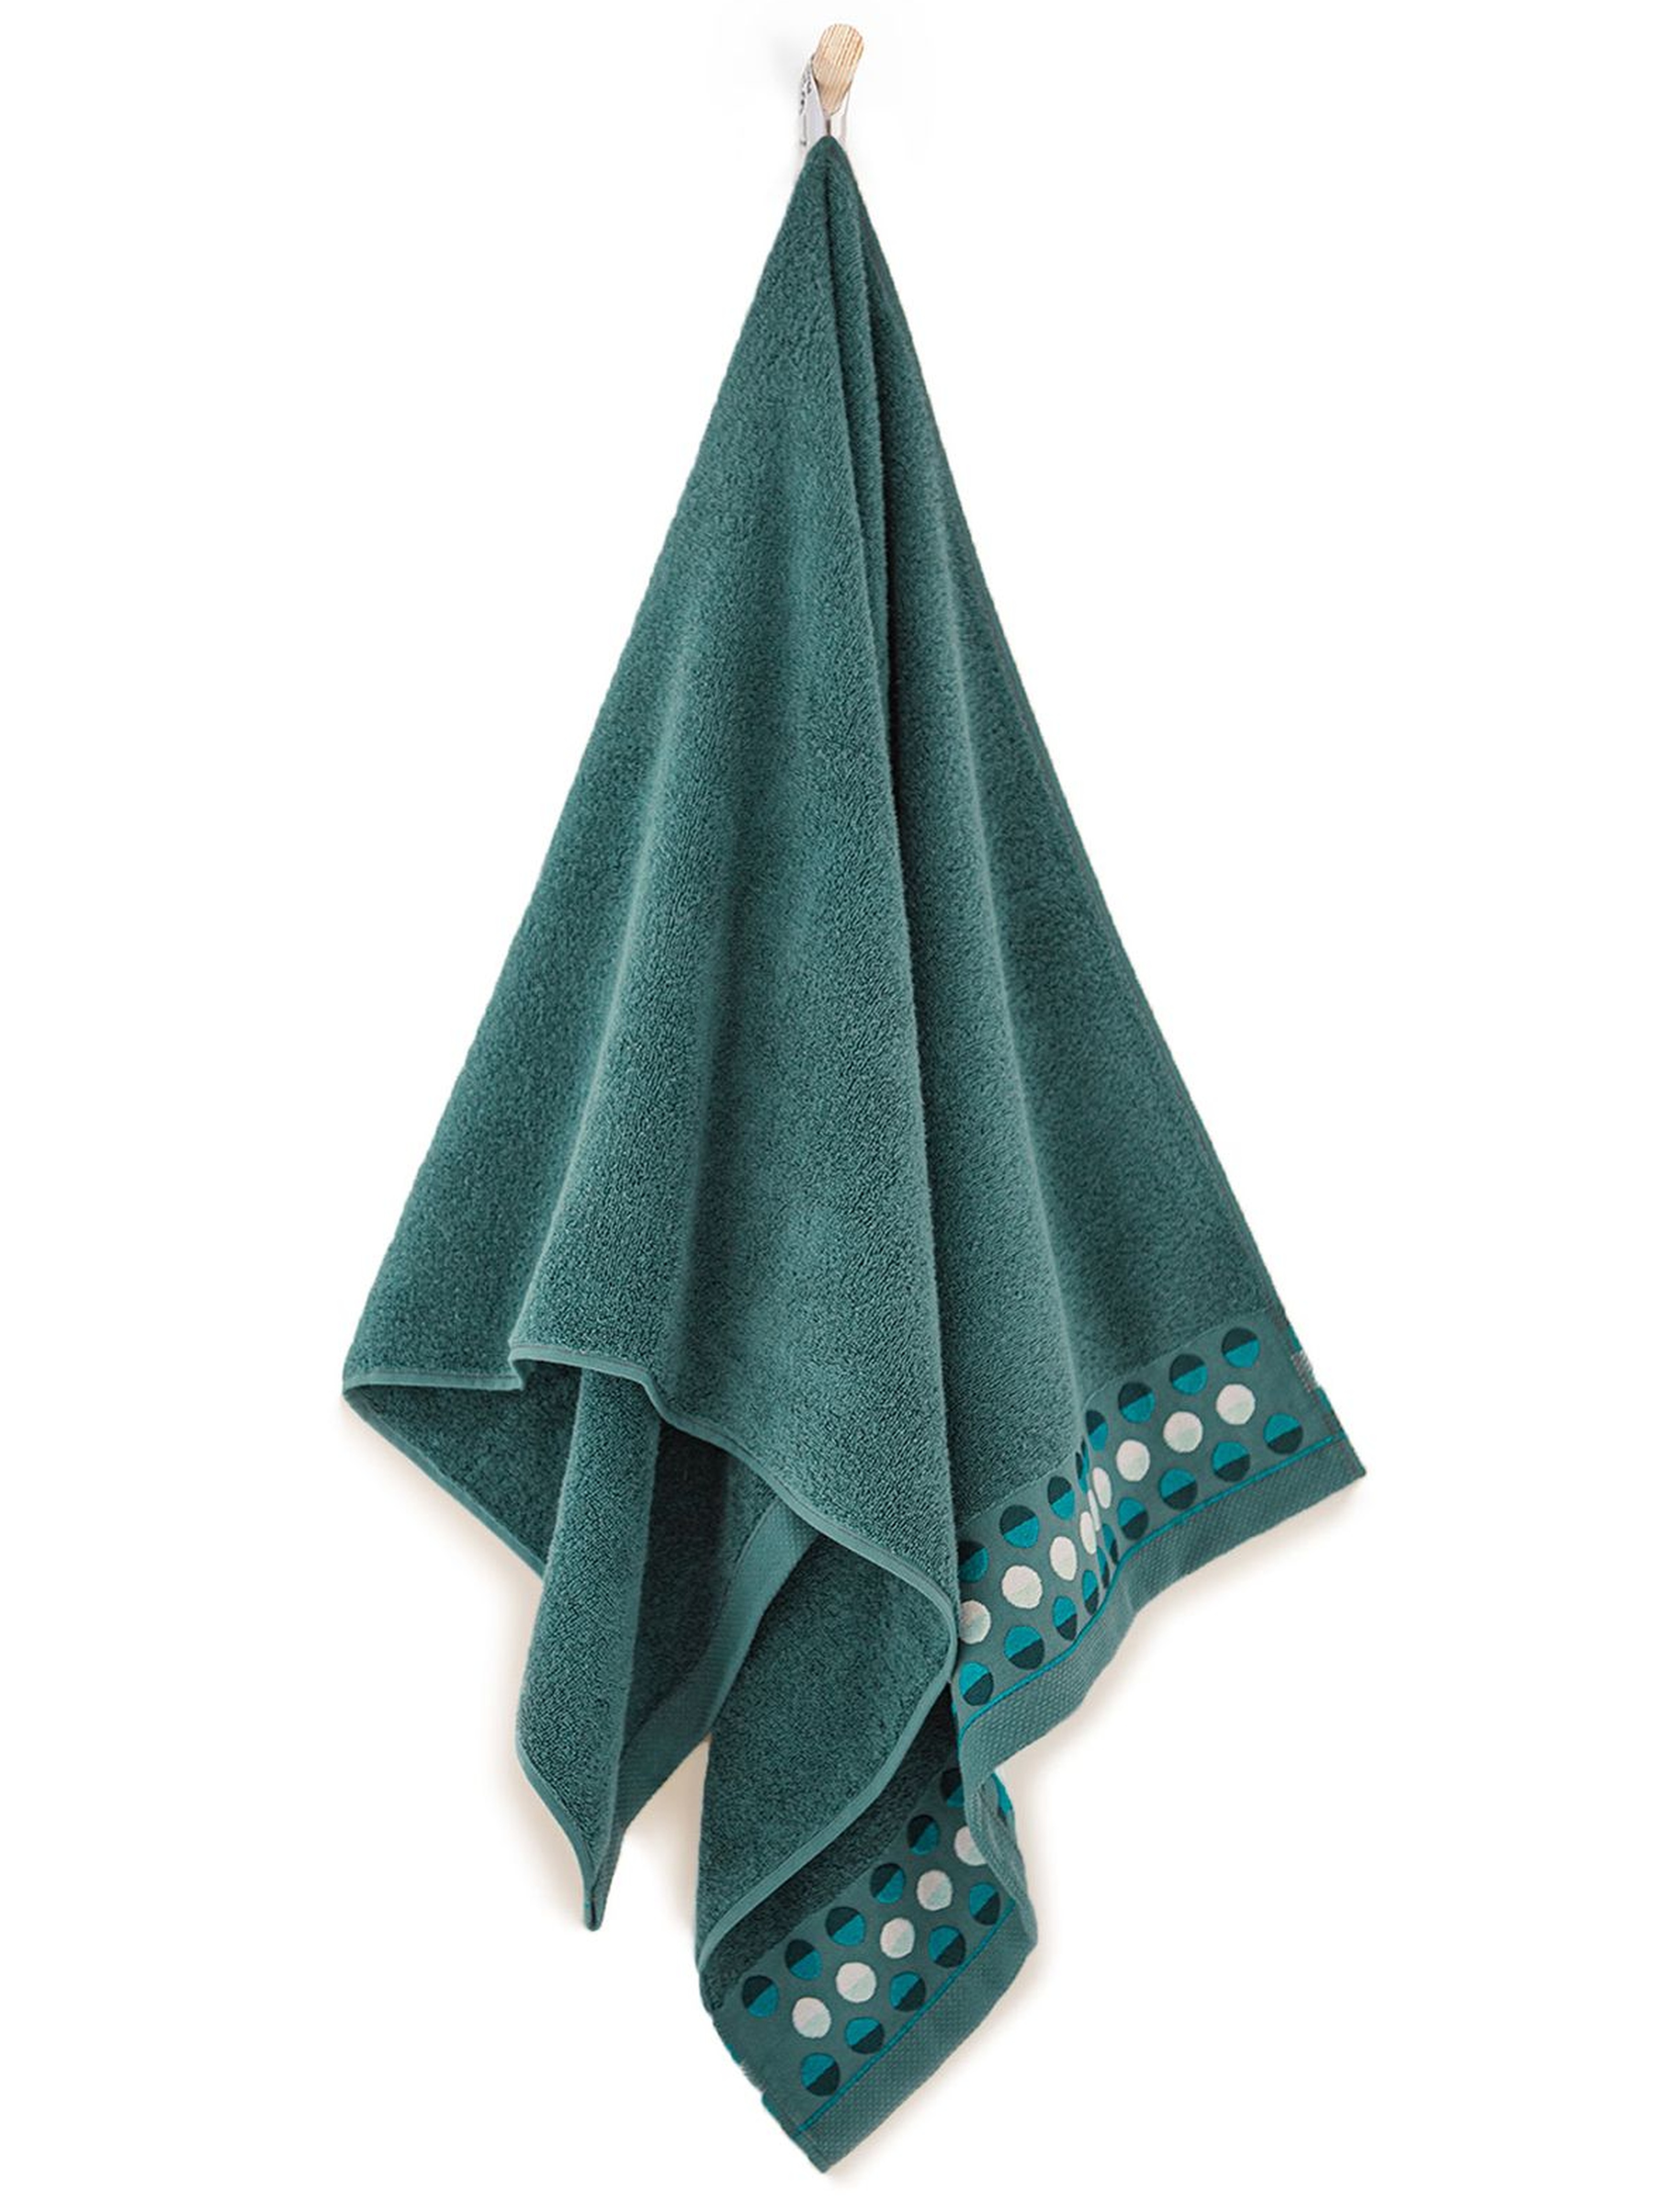 Ręcznik z bawełny egipskiej Zen - Bukszpan 70x140cm